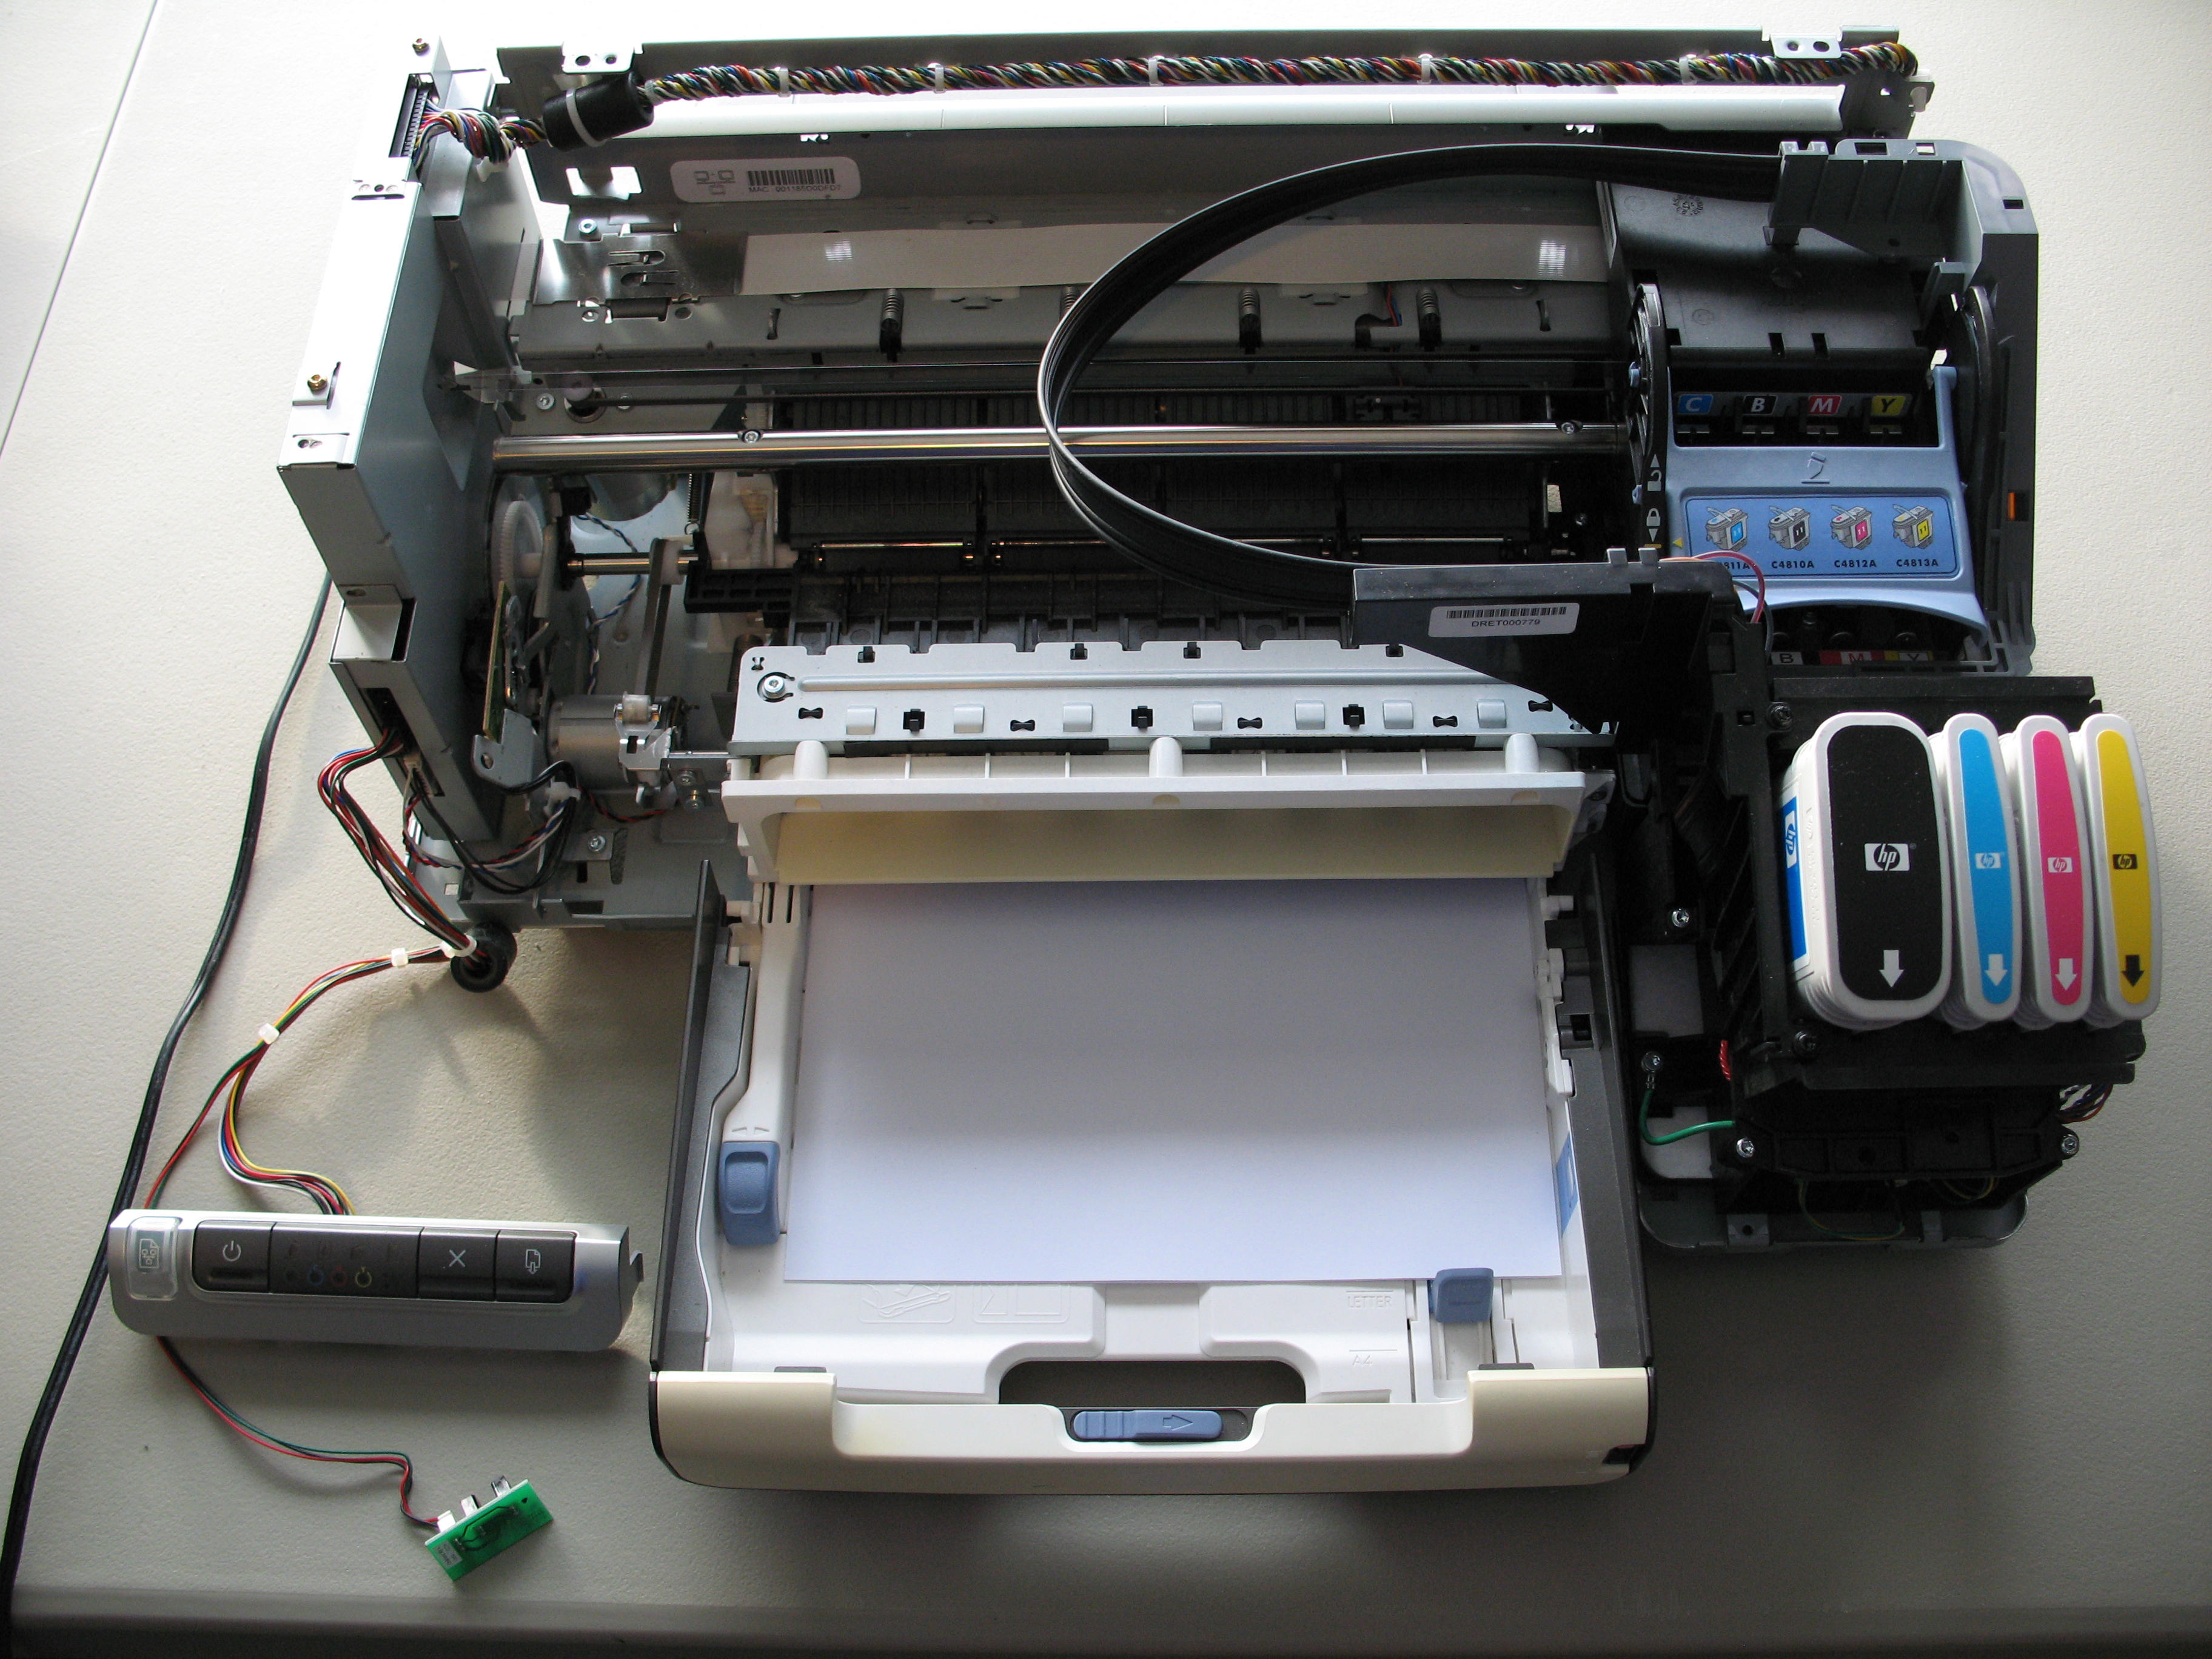 Impresora láser o inyección de tinta. ¿Cuál es mejor? - Daruchi